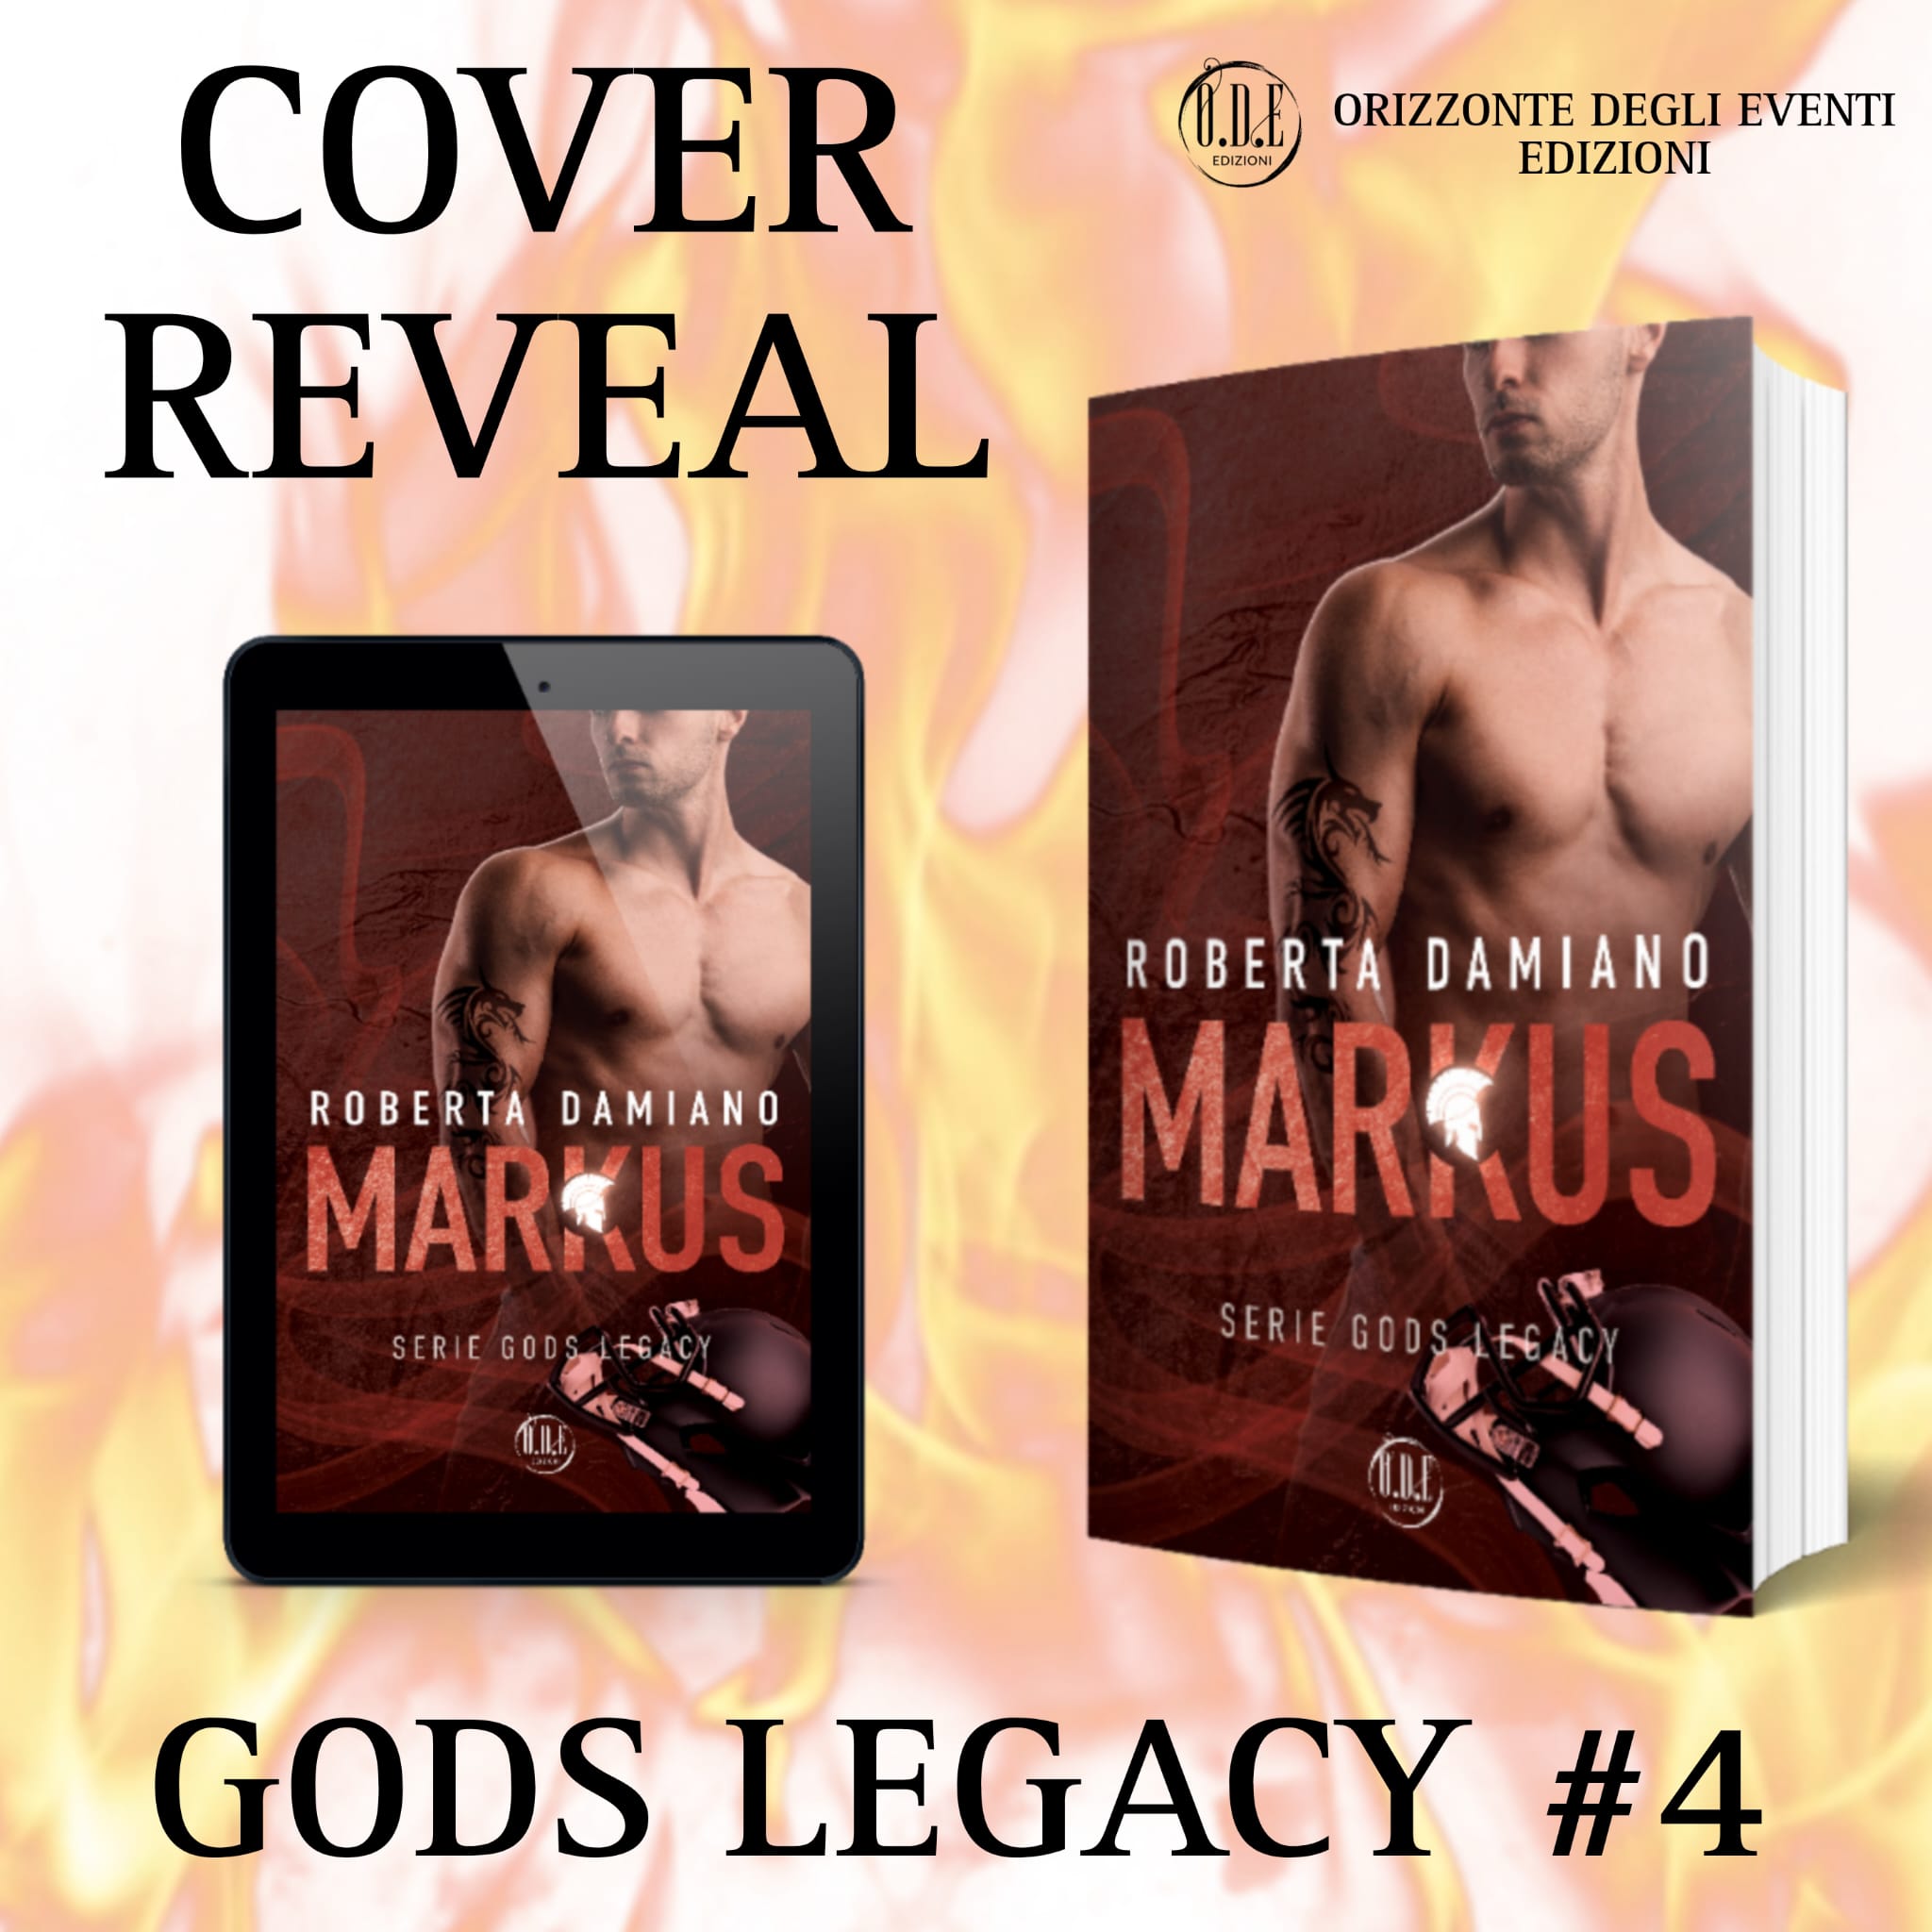 Cover reveal “Markus” di Roberta Damiano